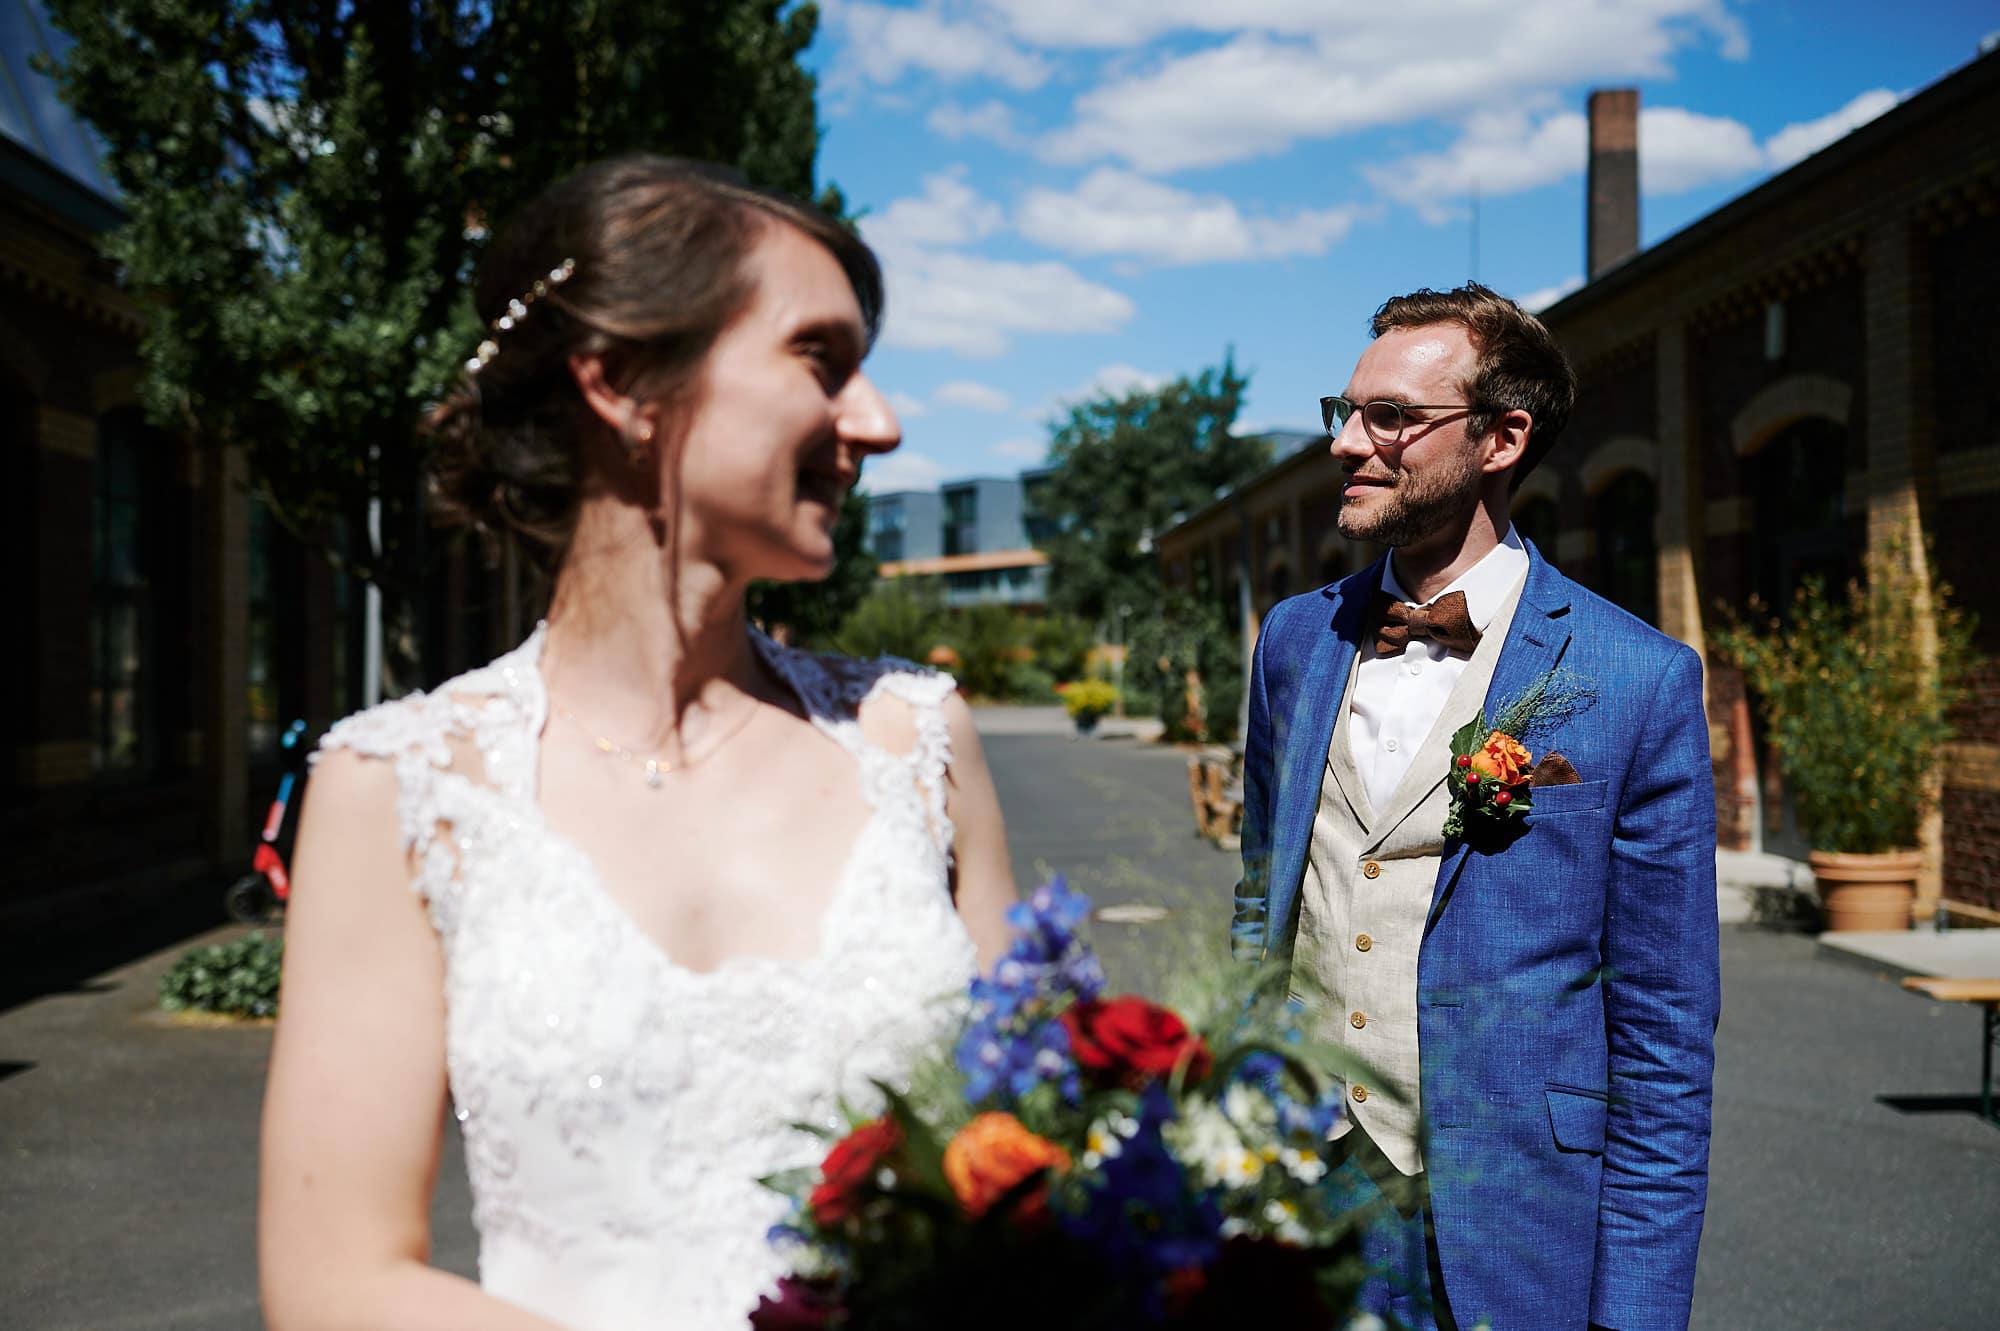 Eine Braut und ein Bräutigam lächeln sich an einem sonnigen Tag im Freien an, während der Bräutigam die Braut bewundernd ansieht.